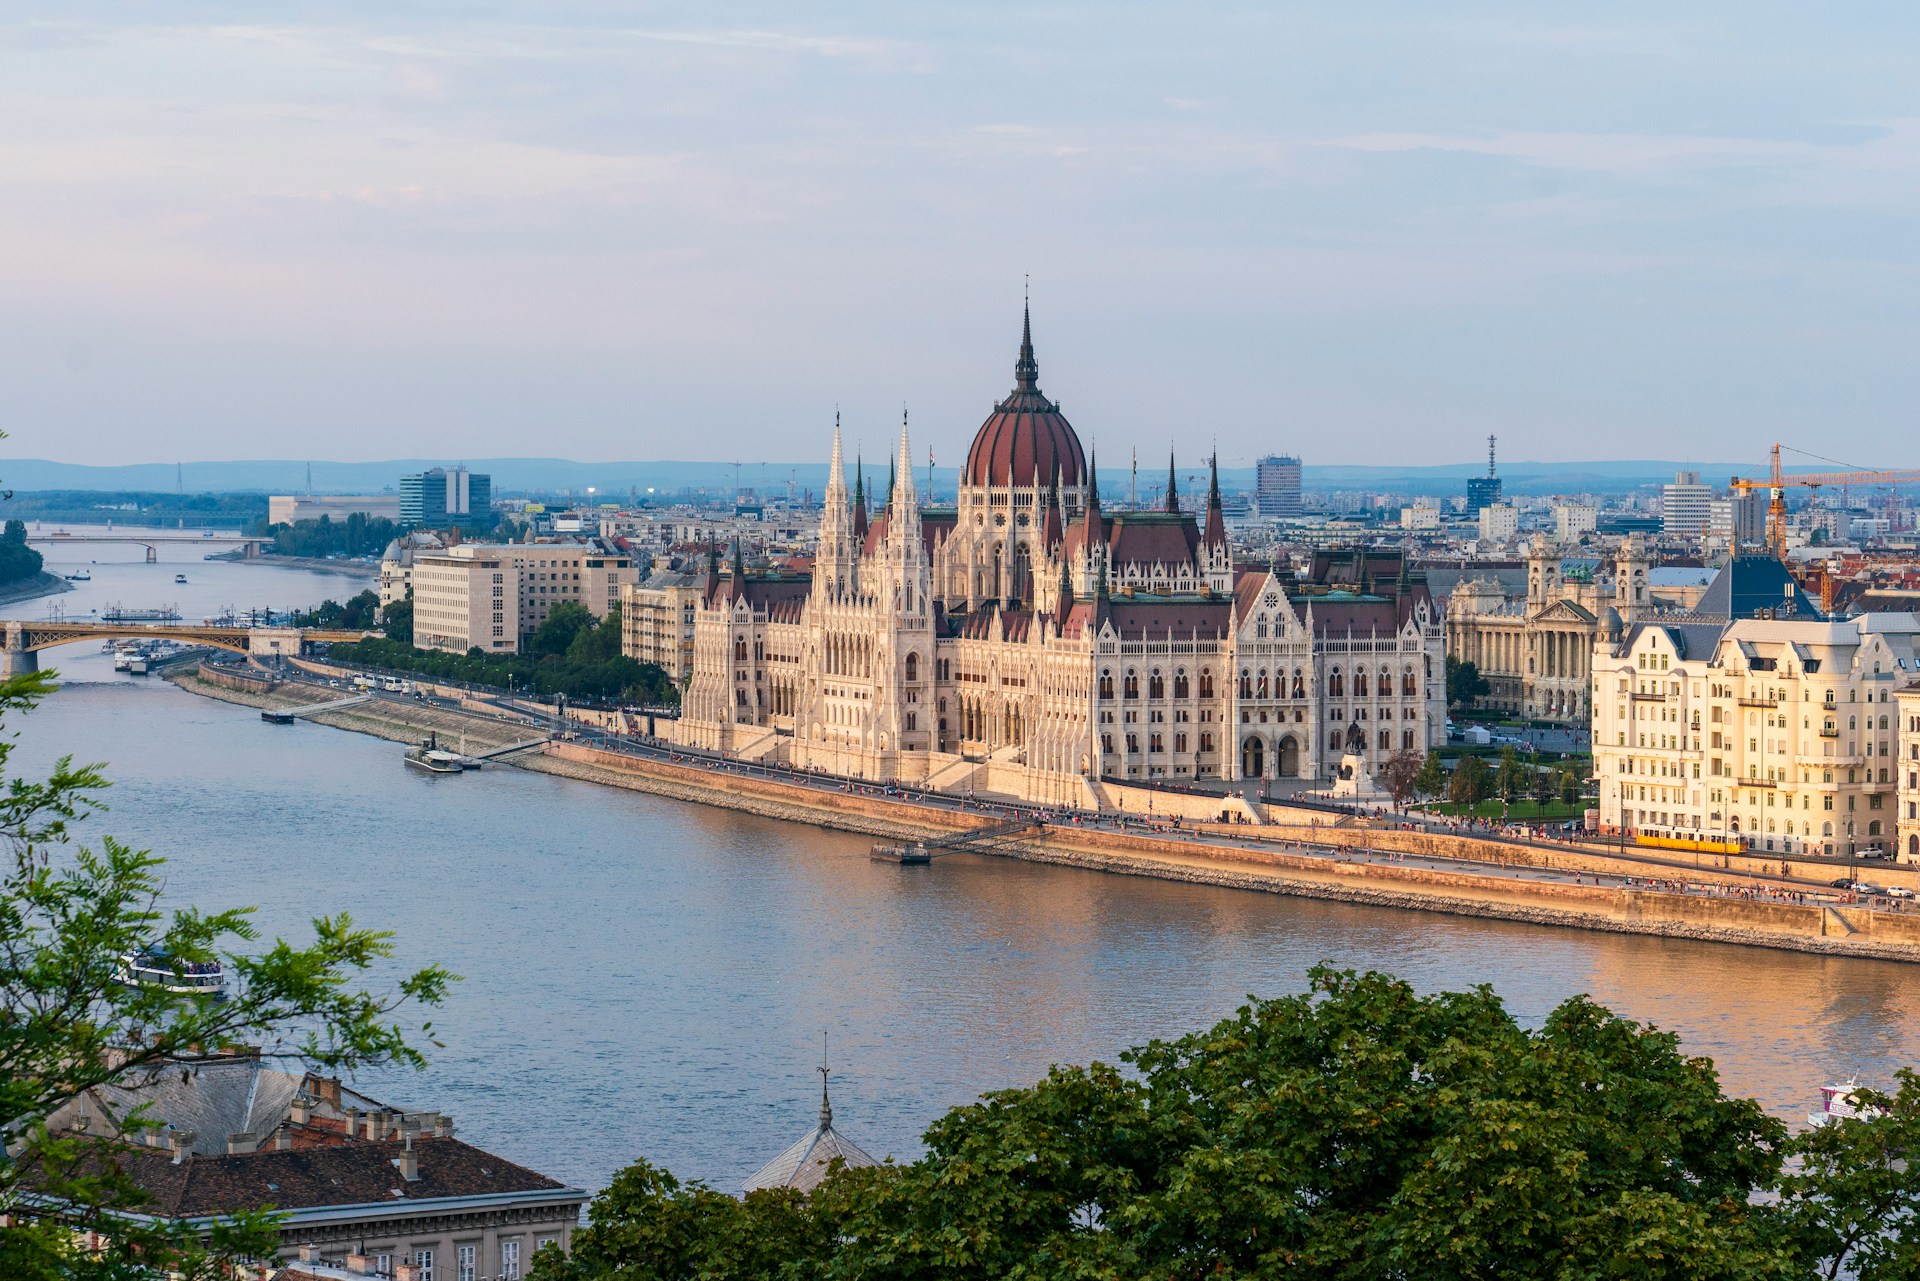 Plan zwiedzania Budapesztu - co zobaczyć i gdzie spać